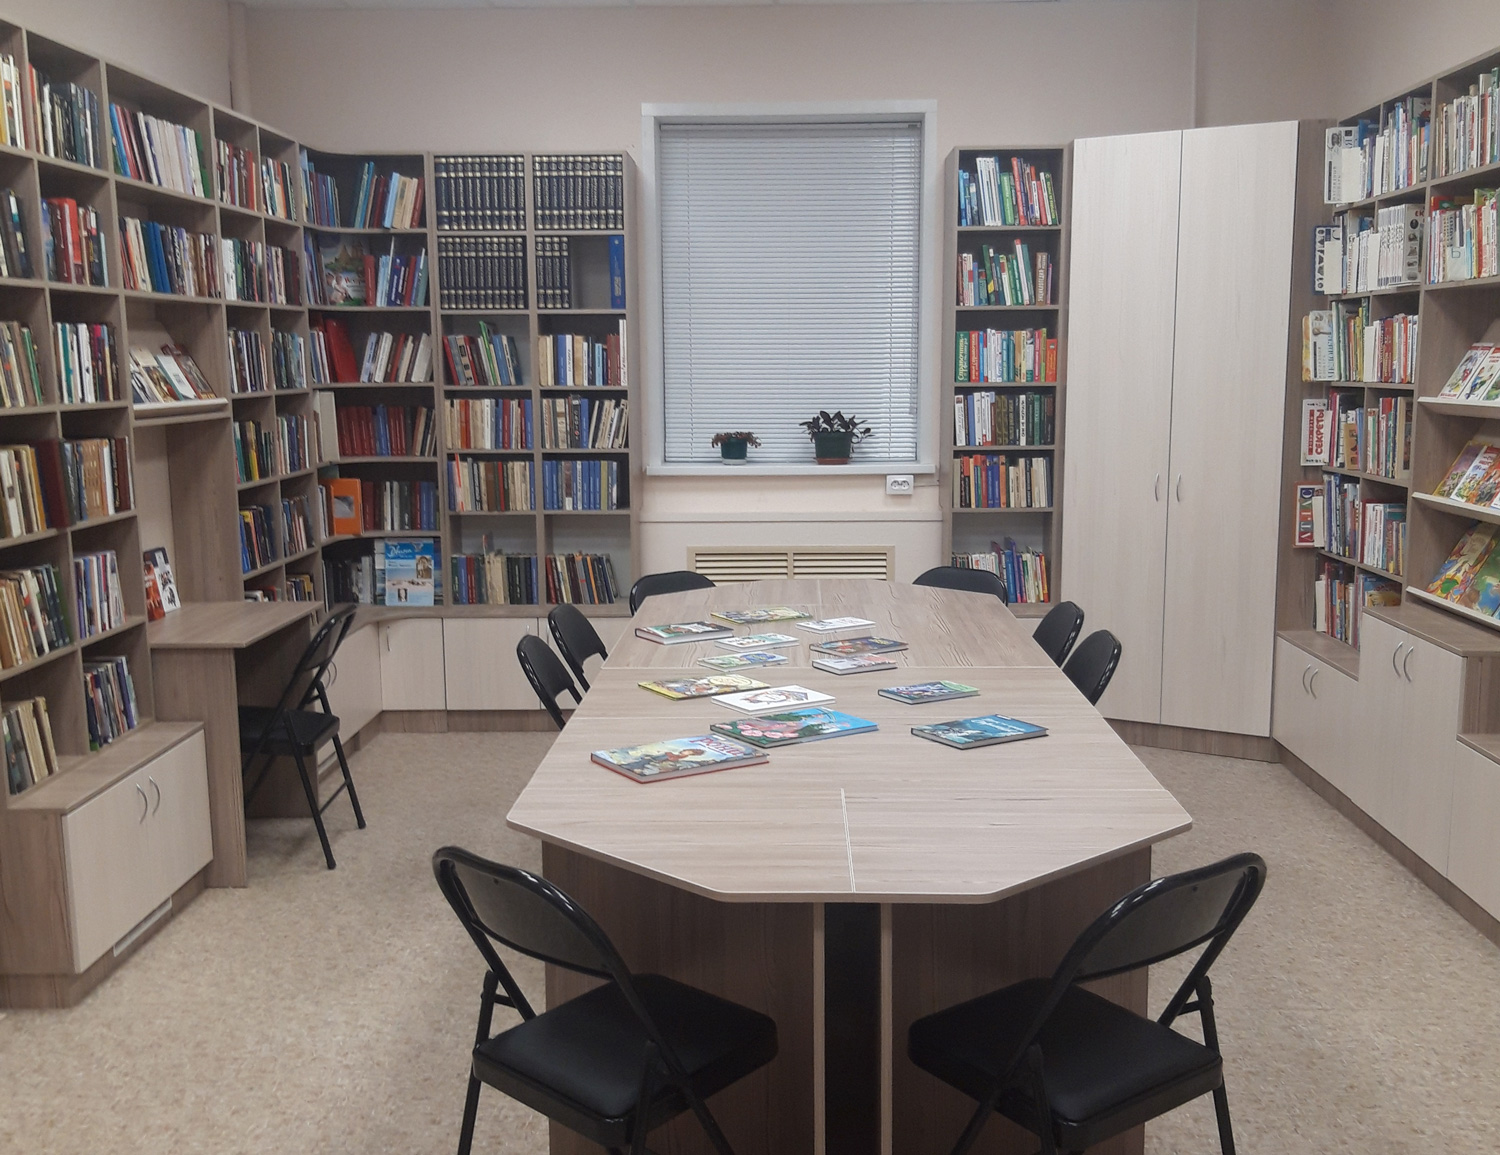 Третья обновленная библиотека открылась в Приморском районе